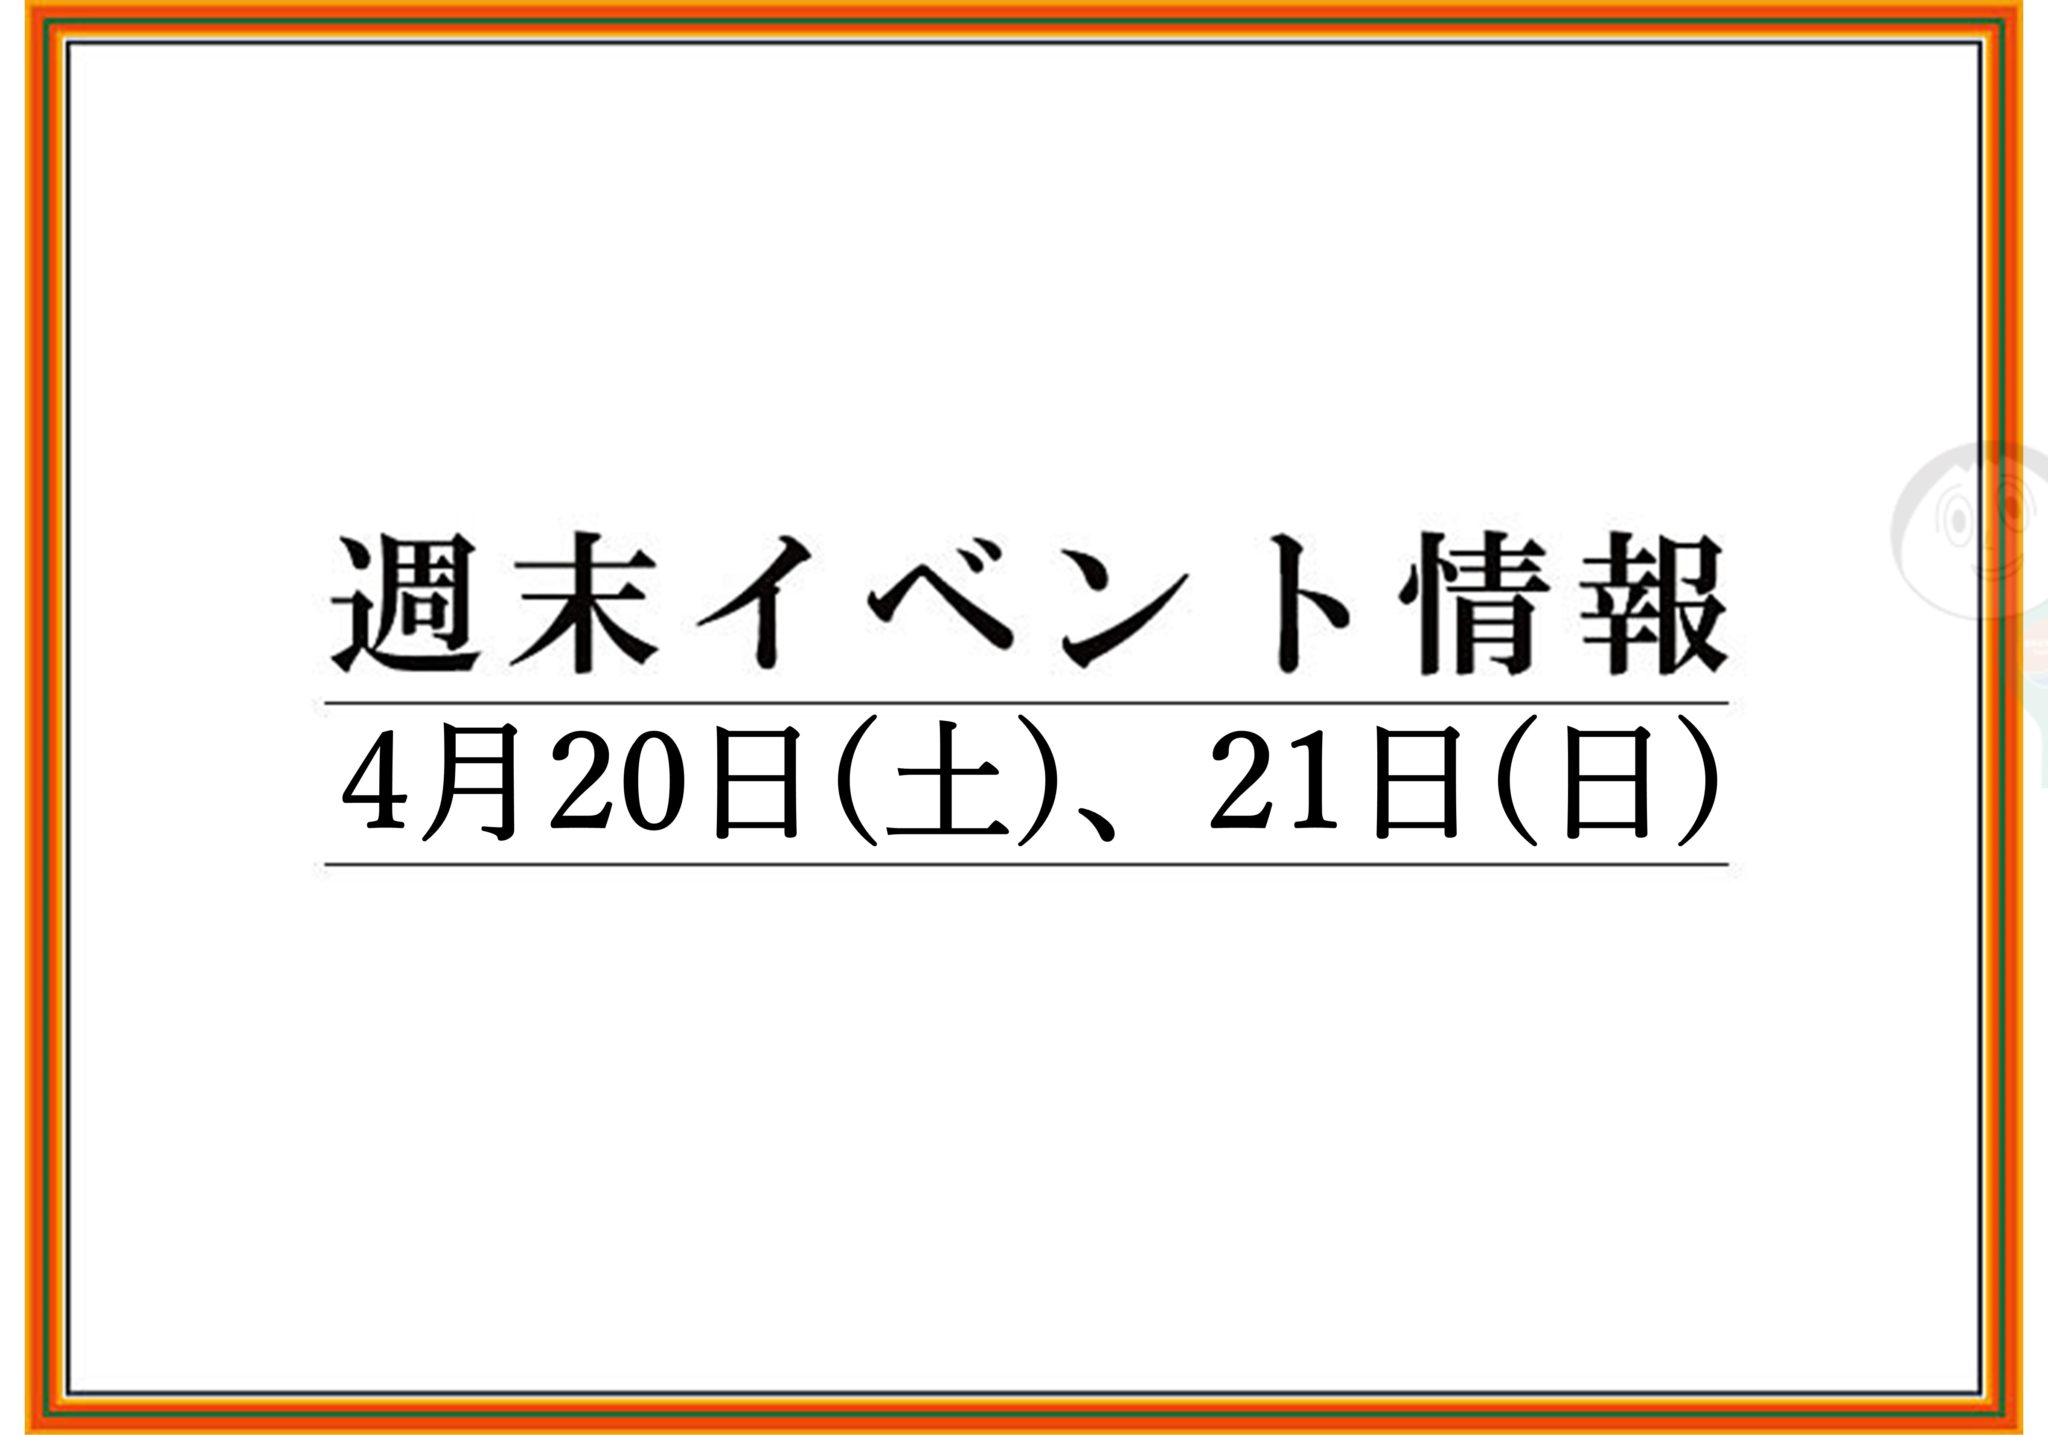 【まとめ】2019年 山形/上山/天童の週末イベント情報　4月20日(土),21日(日)